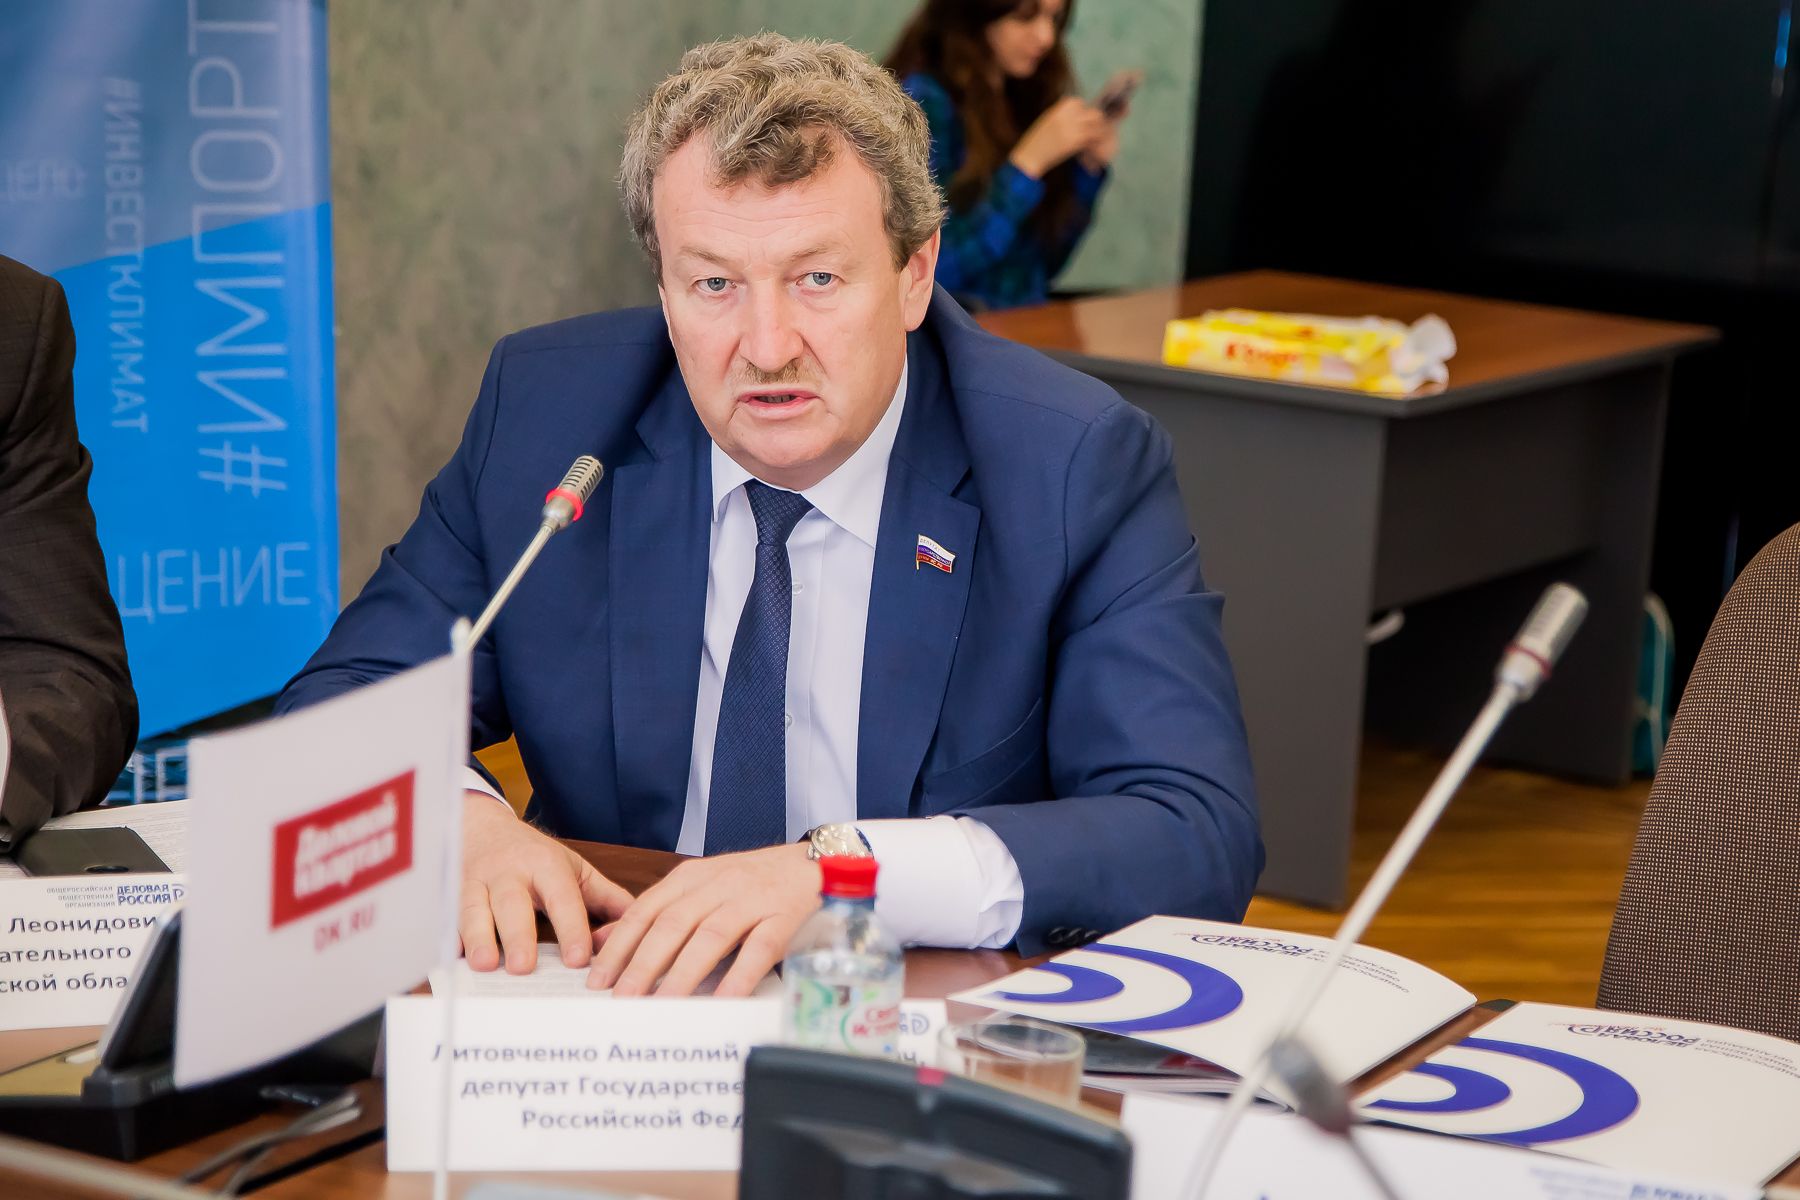 Анатолий Литовченко призвал глав городов усилить разъяснительную работу о коронавирусе